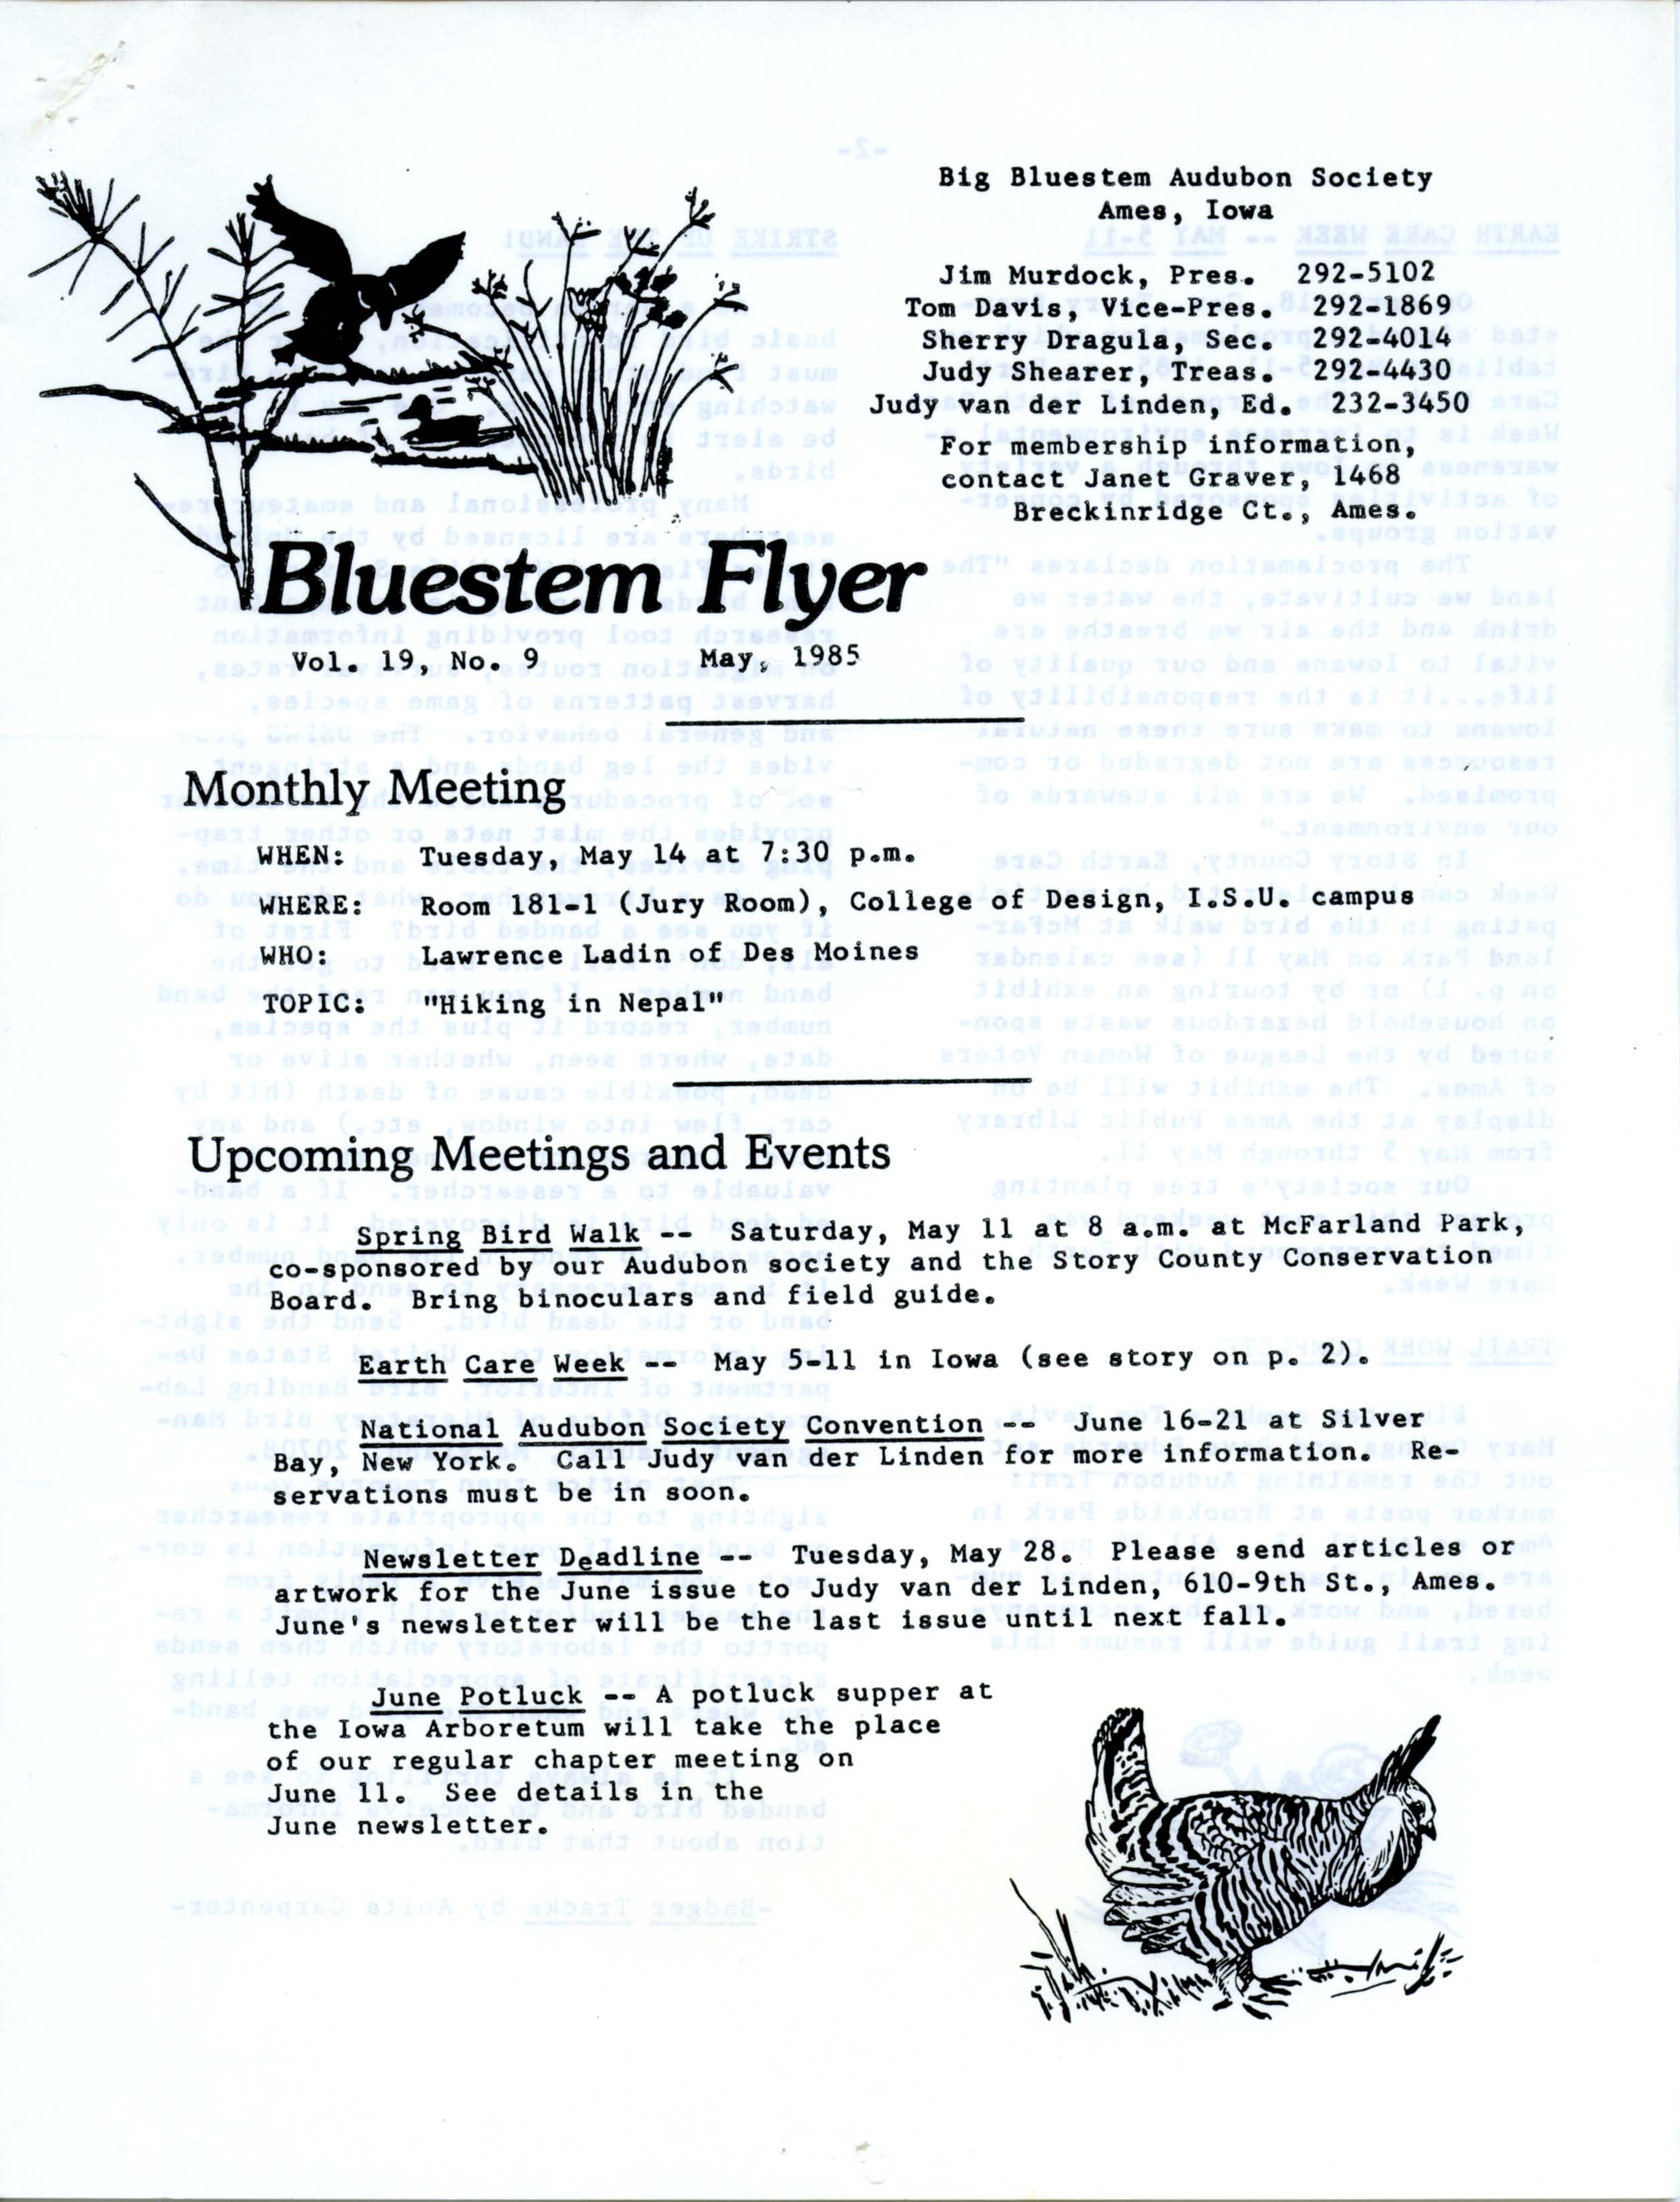 Bluestem Flyer, Volume 19, Number 9, May 1985